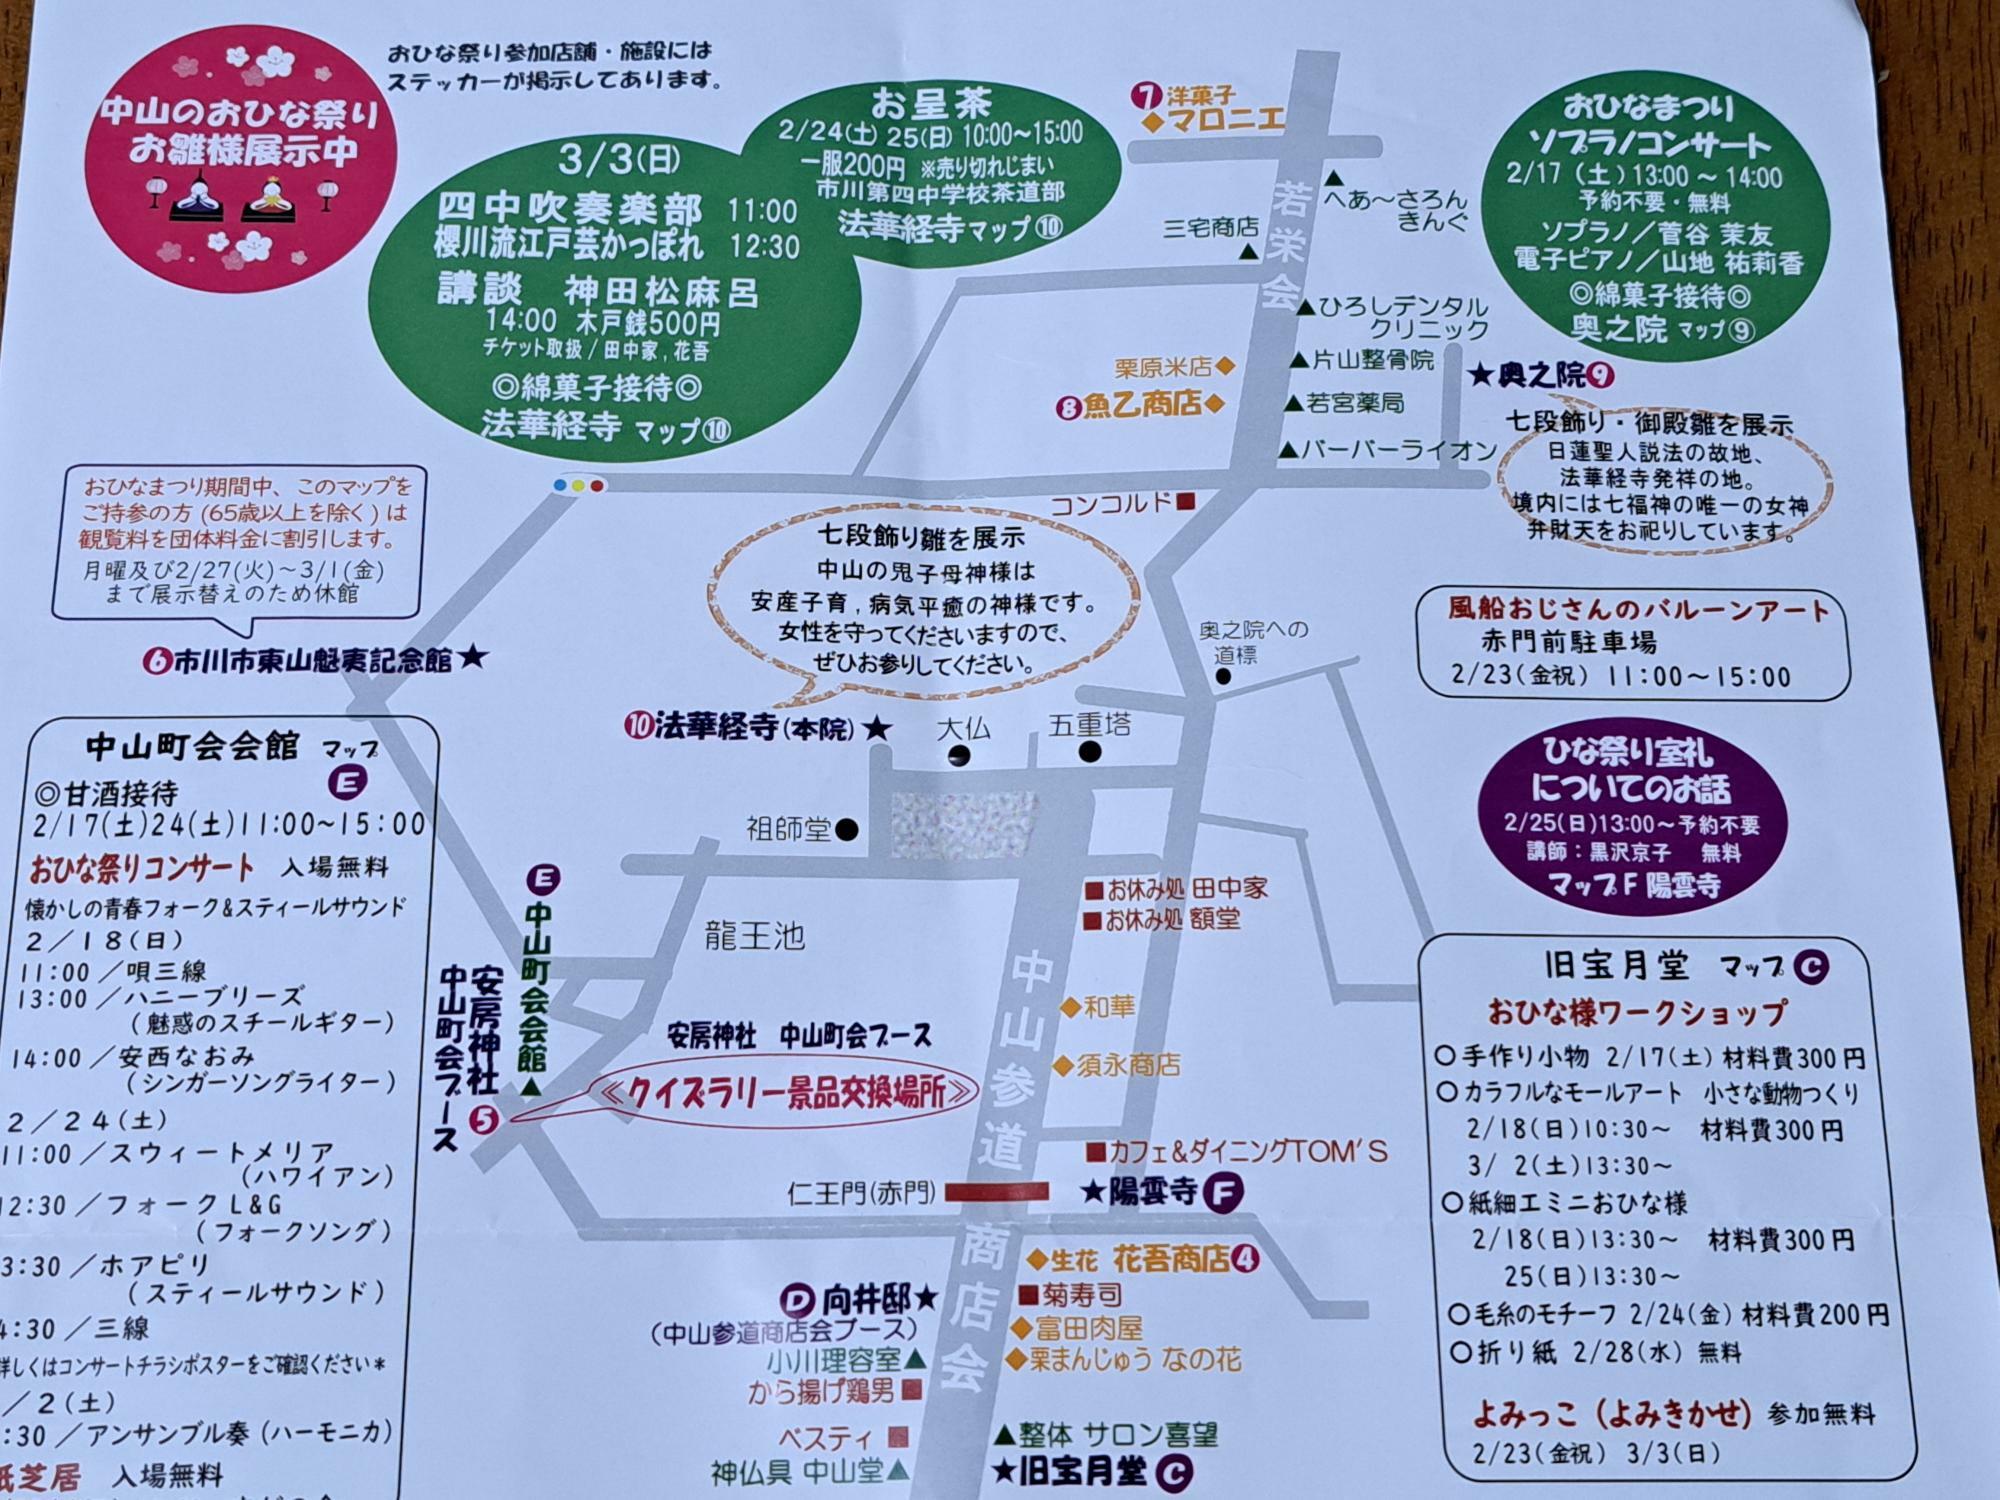 洋菓子マロニエは「中山のおひなまつり」MAPで確認しても、下総中山駅から一番遠い場所にあることが分かります。